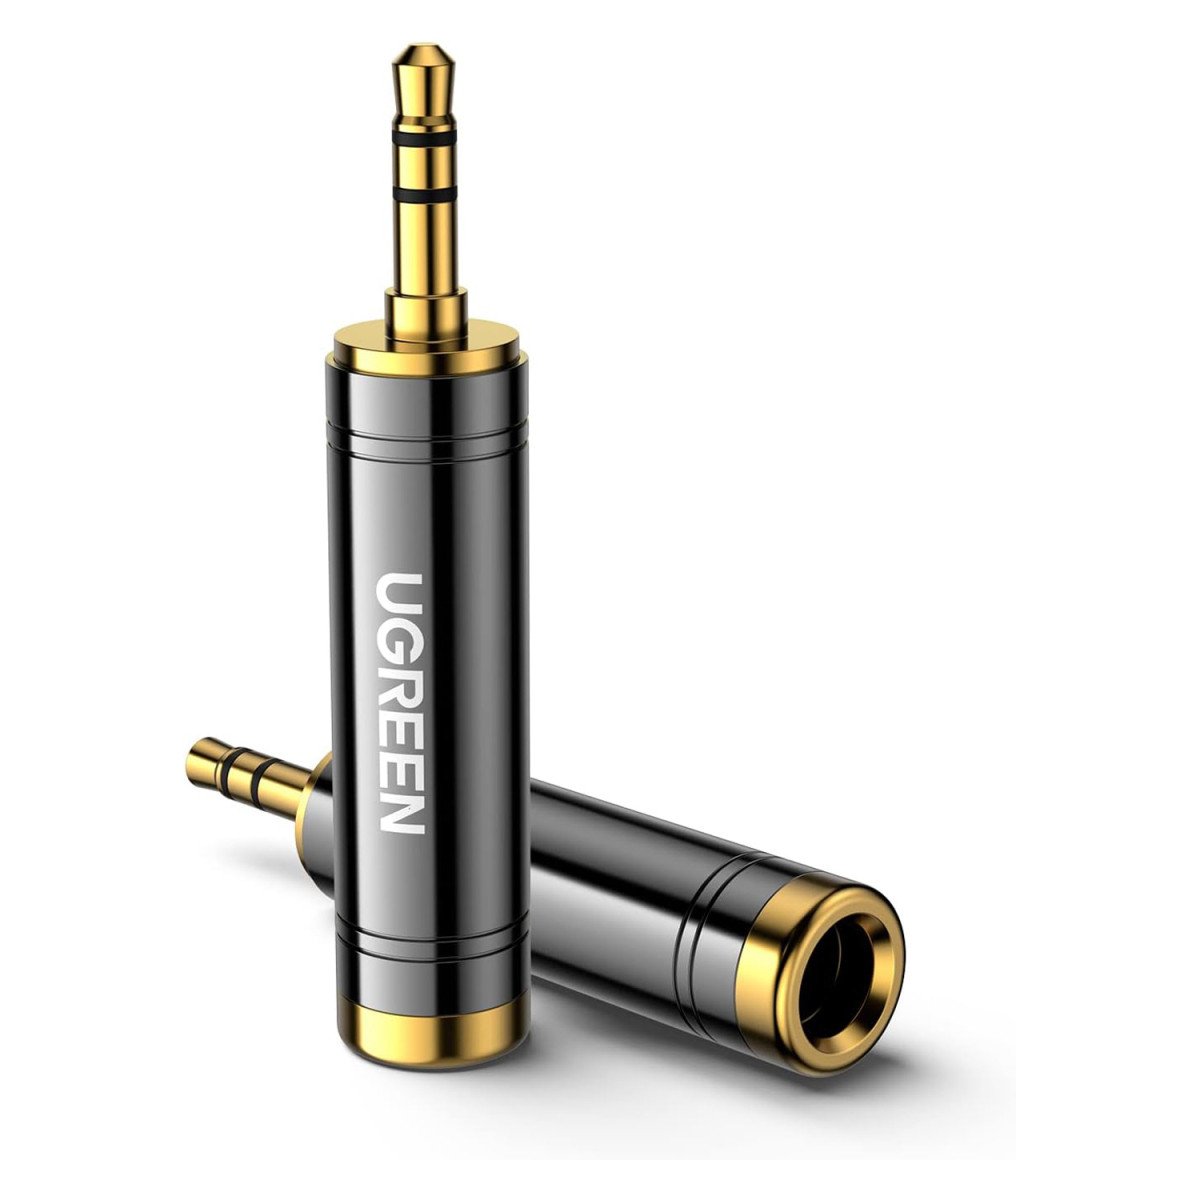 Аудио адаптер UGREEN AV168 3.5mm Male to 6.35mm Female Adapter 1pcs Black (60711)